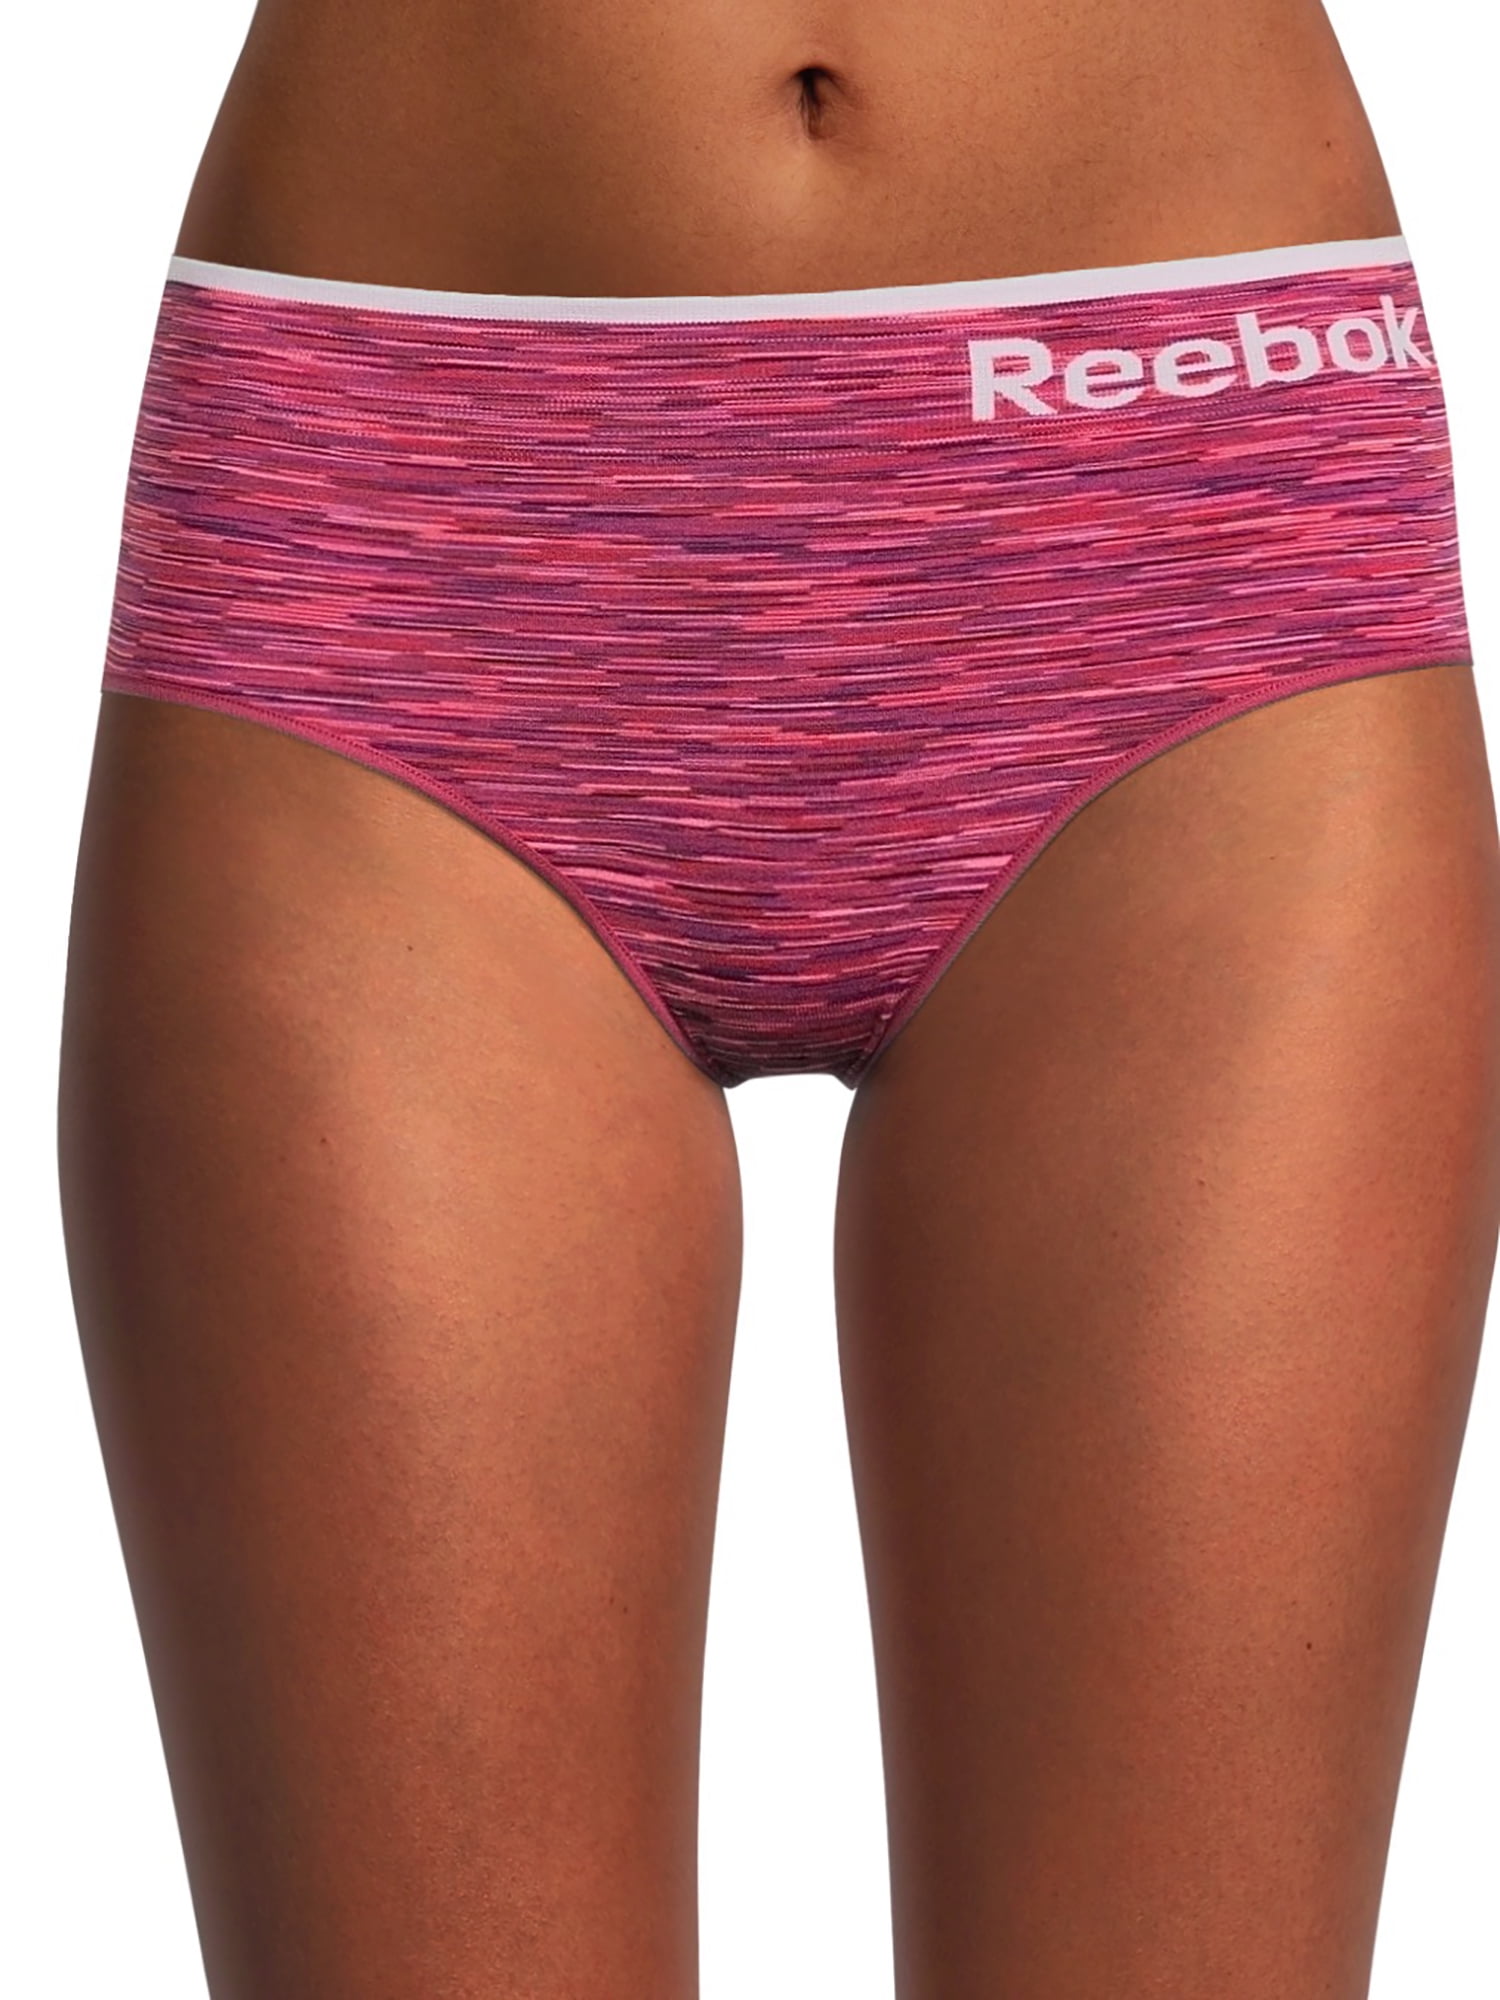 Reebok Women's Underwear – No Show Lightweight Hipster Briefs (6 Pack)